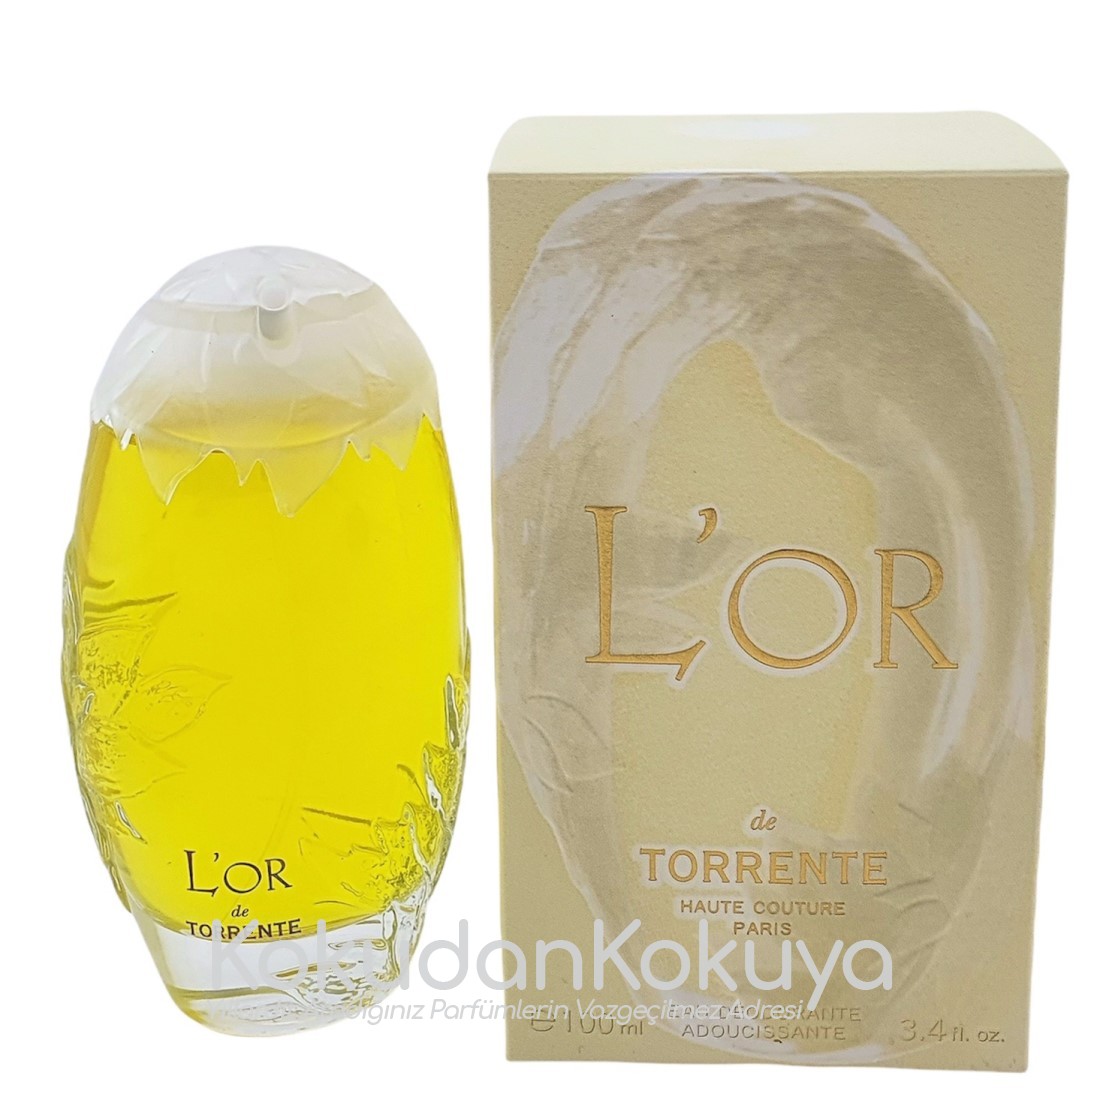 TORRENTE L'or (Vintage) Deodorant Kadın 100ml Deodorant Spray (Cam) 